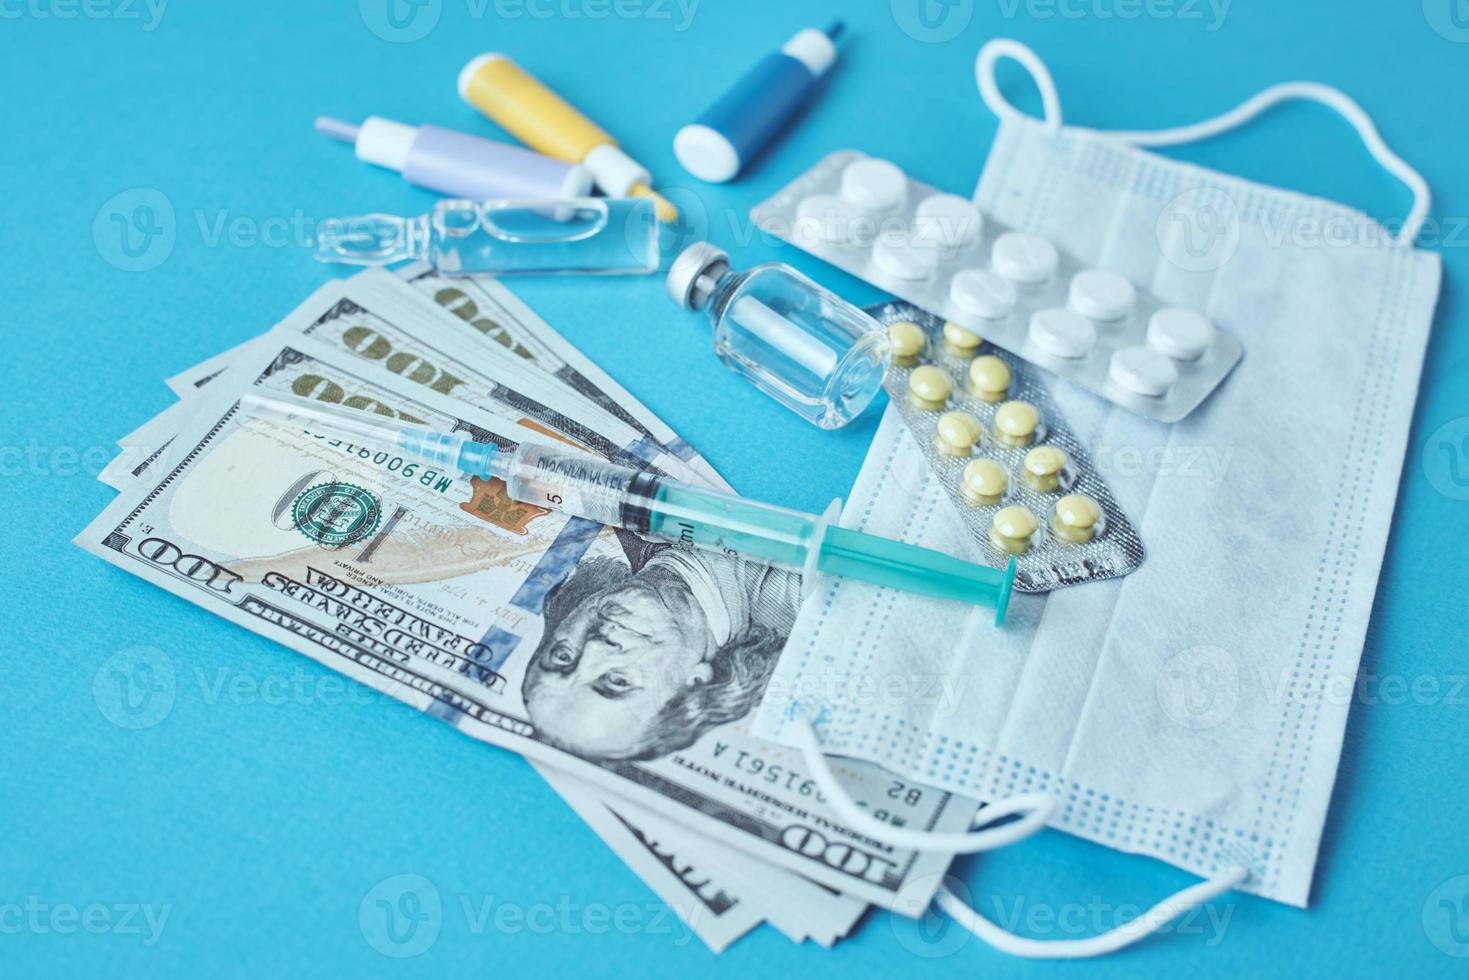 pilules, masque de protection, articles médicaux et billets d'un dollar sur fond bleu photo